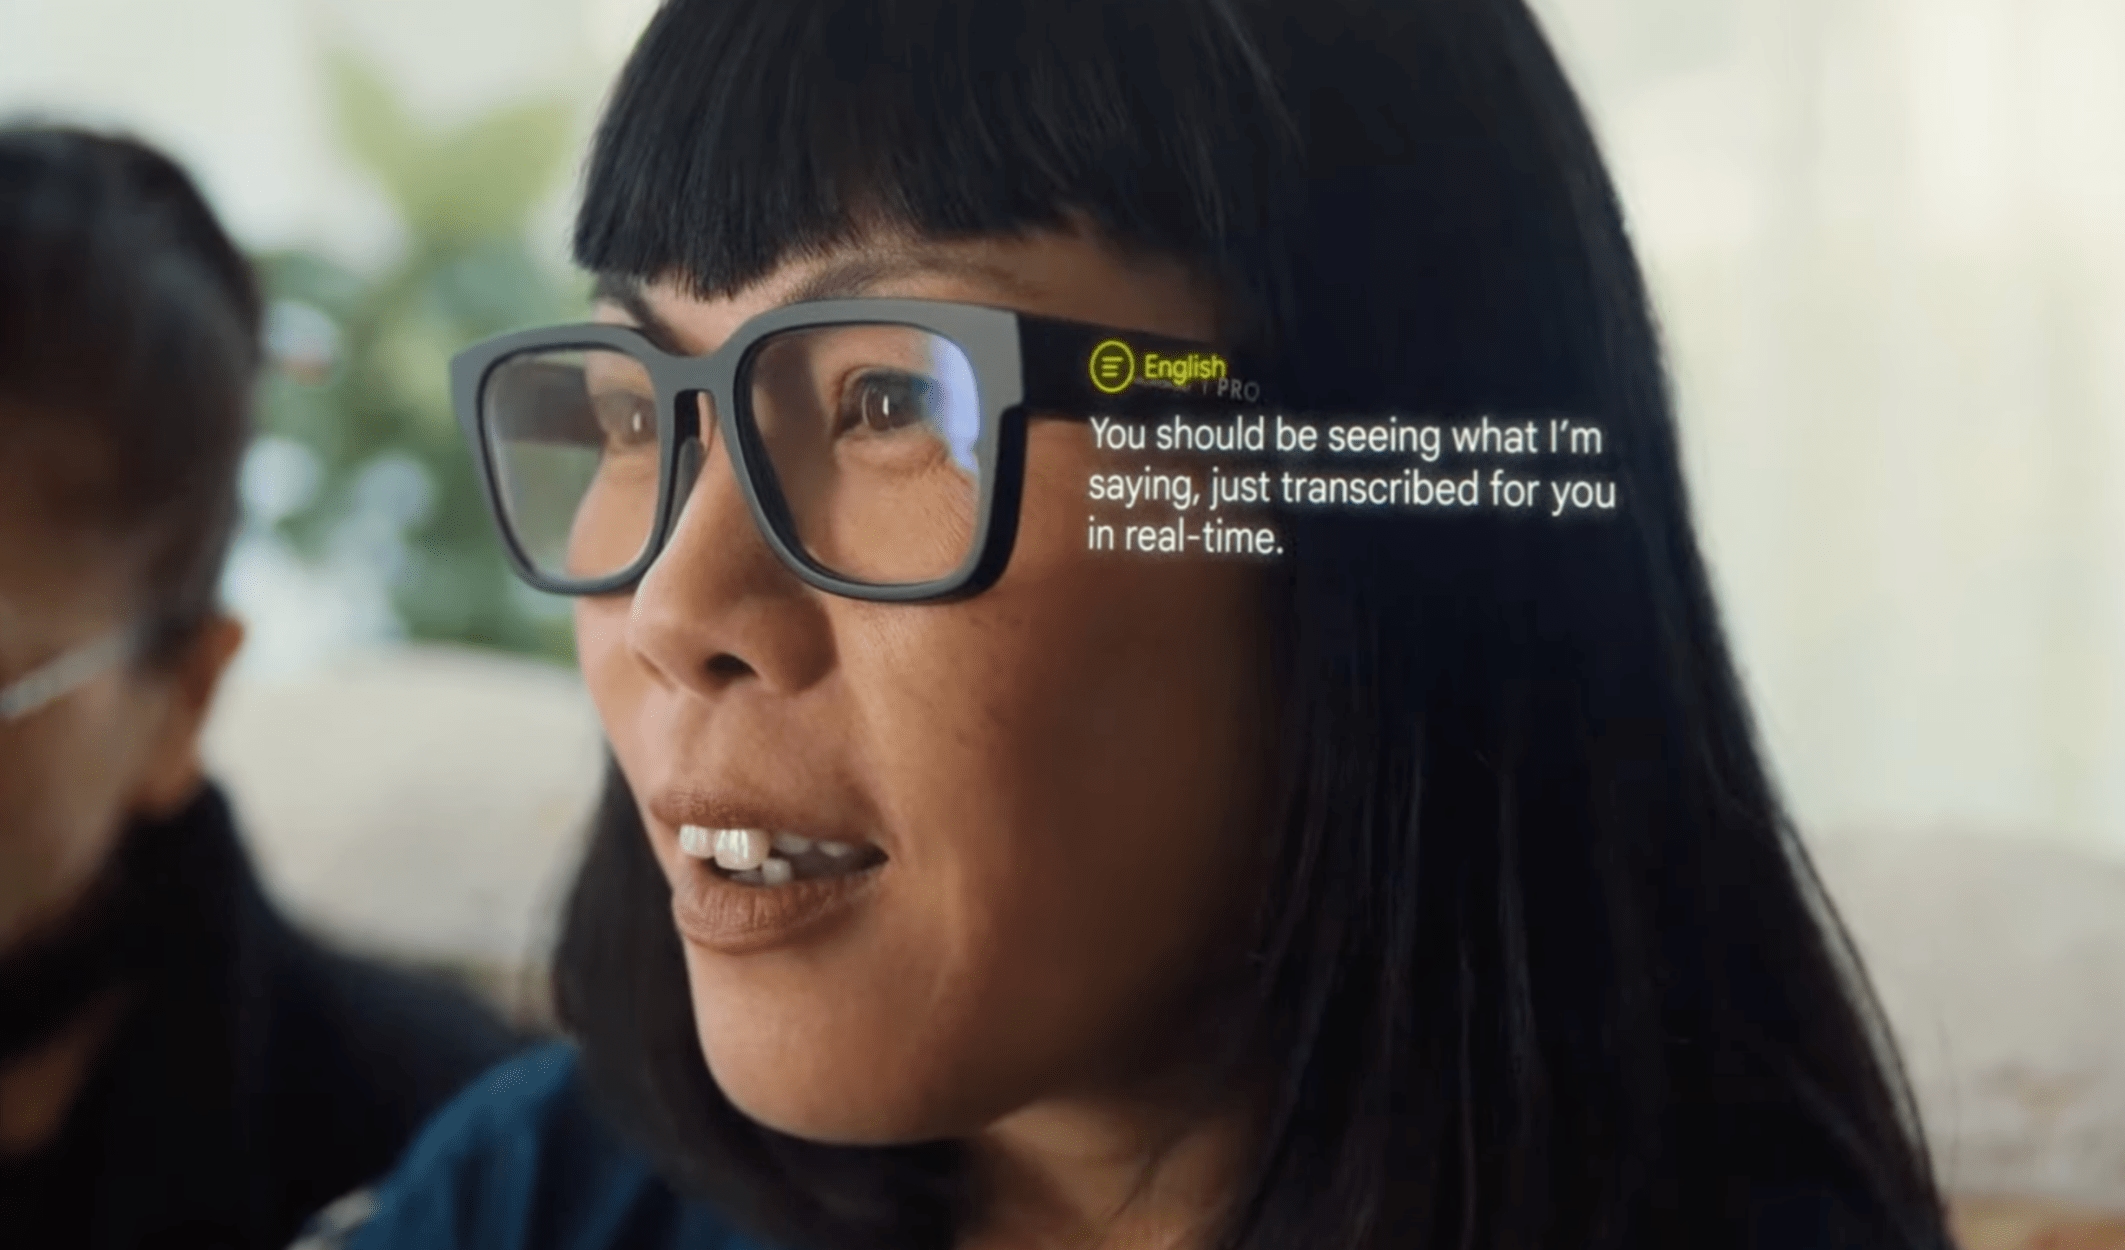 Google zaprezentowało prototyp okularów rozszerzonej rzeczywistości z funkcją tłumaczenia rozmów w czasie rzeczywistym